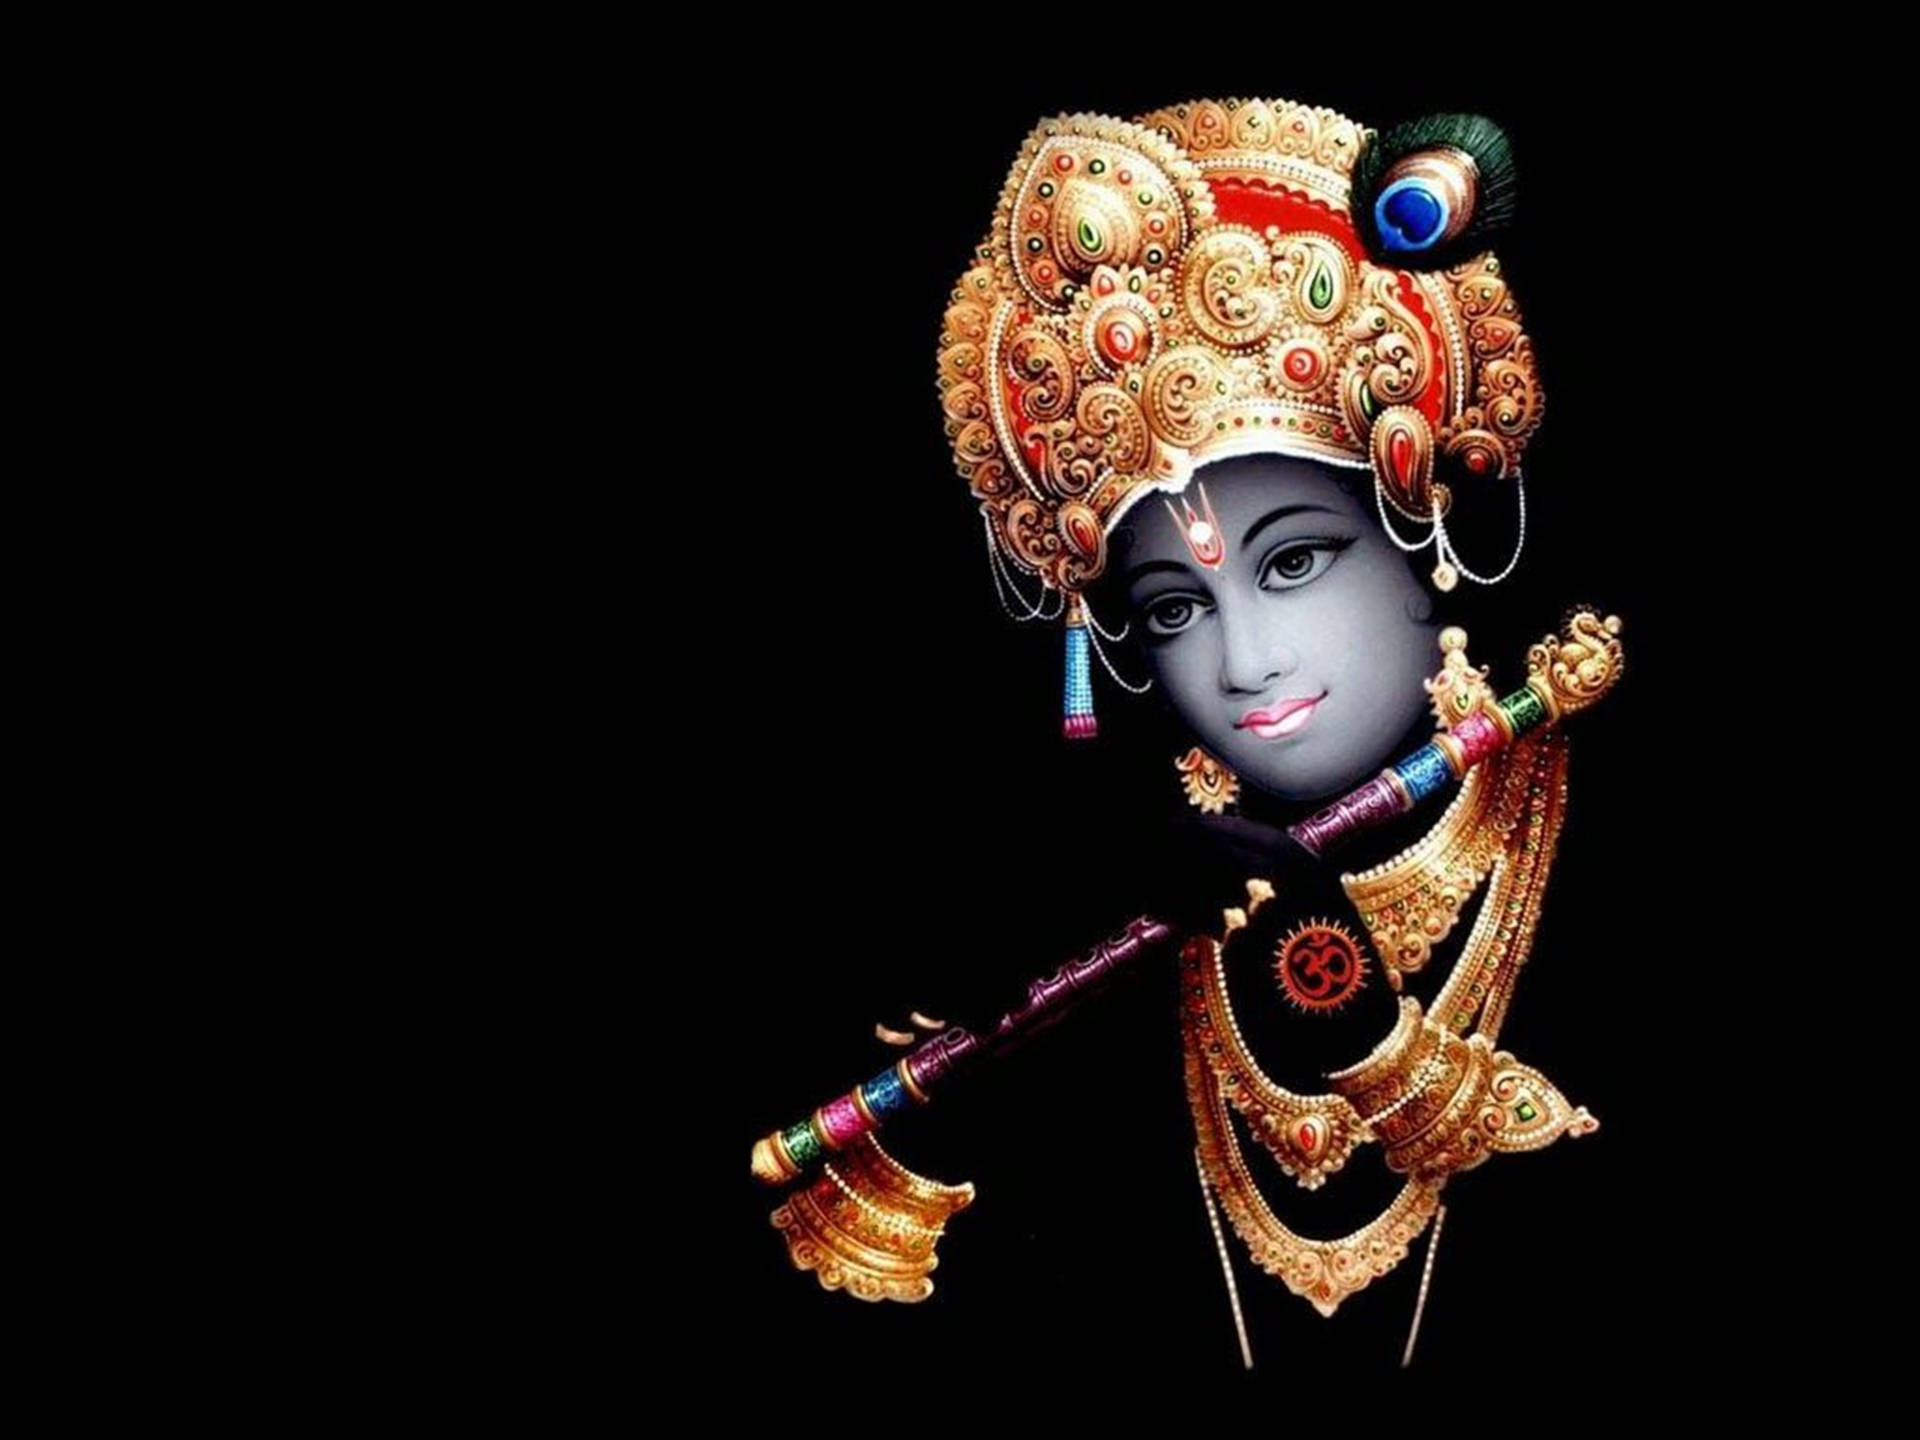 Papel De Parede Do Senhor Krishna, Deus Supremo Em 4k. Papel de Parede